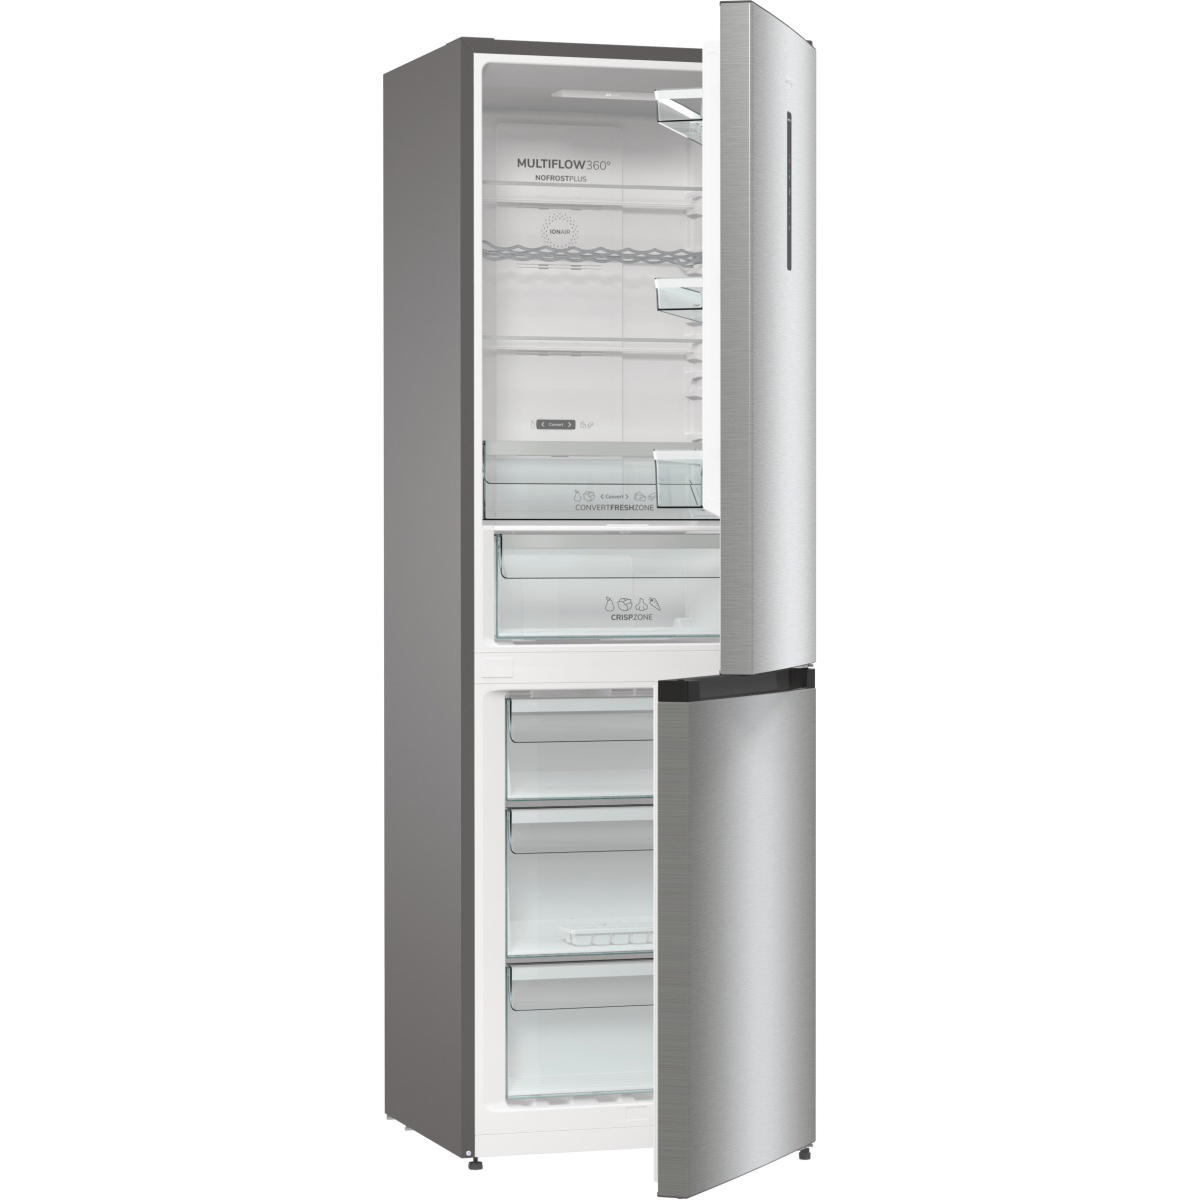 Холодильник Gorenje NRK6192AXL4 (Advanced / Объем - 302 л / Высота - 185см / A++ / Серебристый / NoFrost)